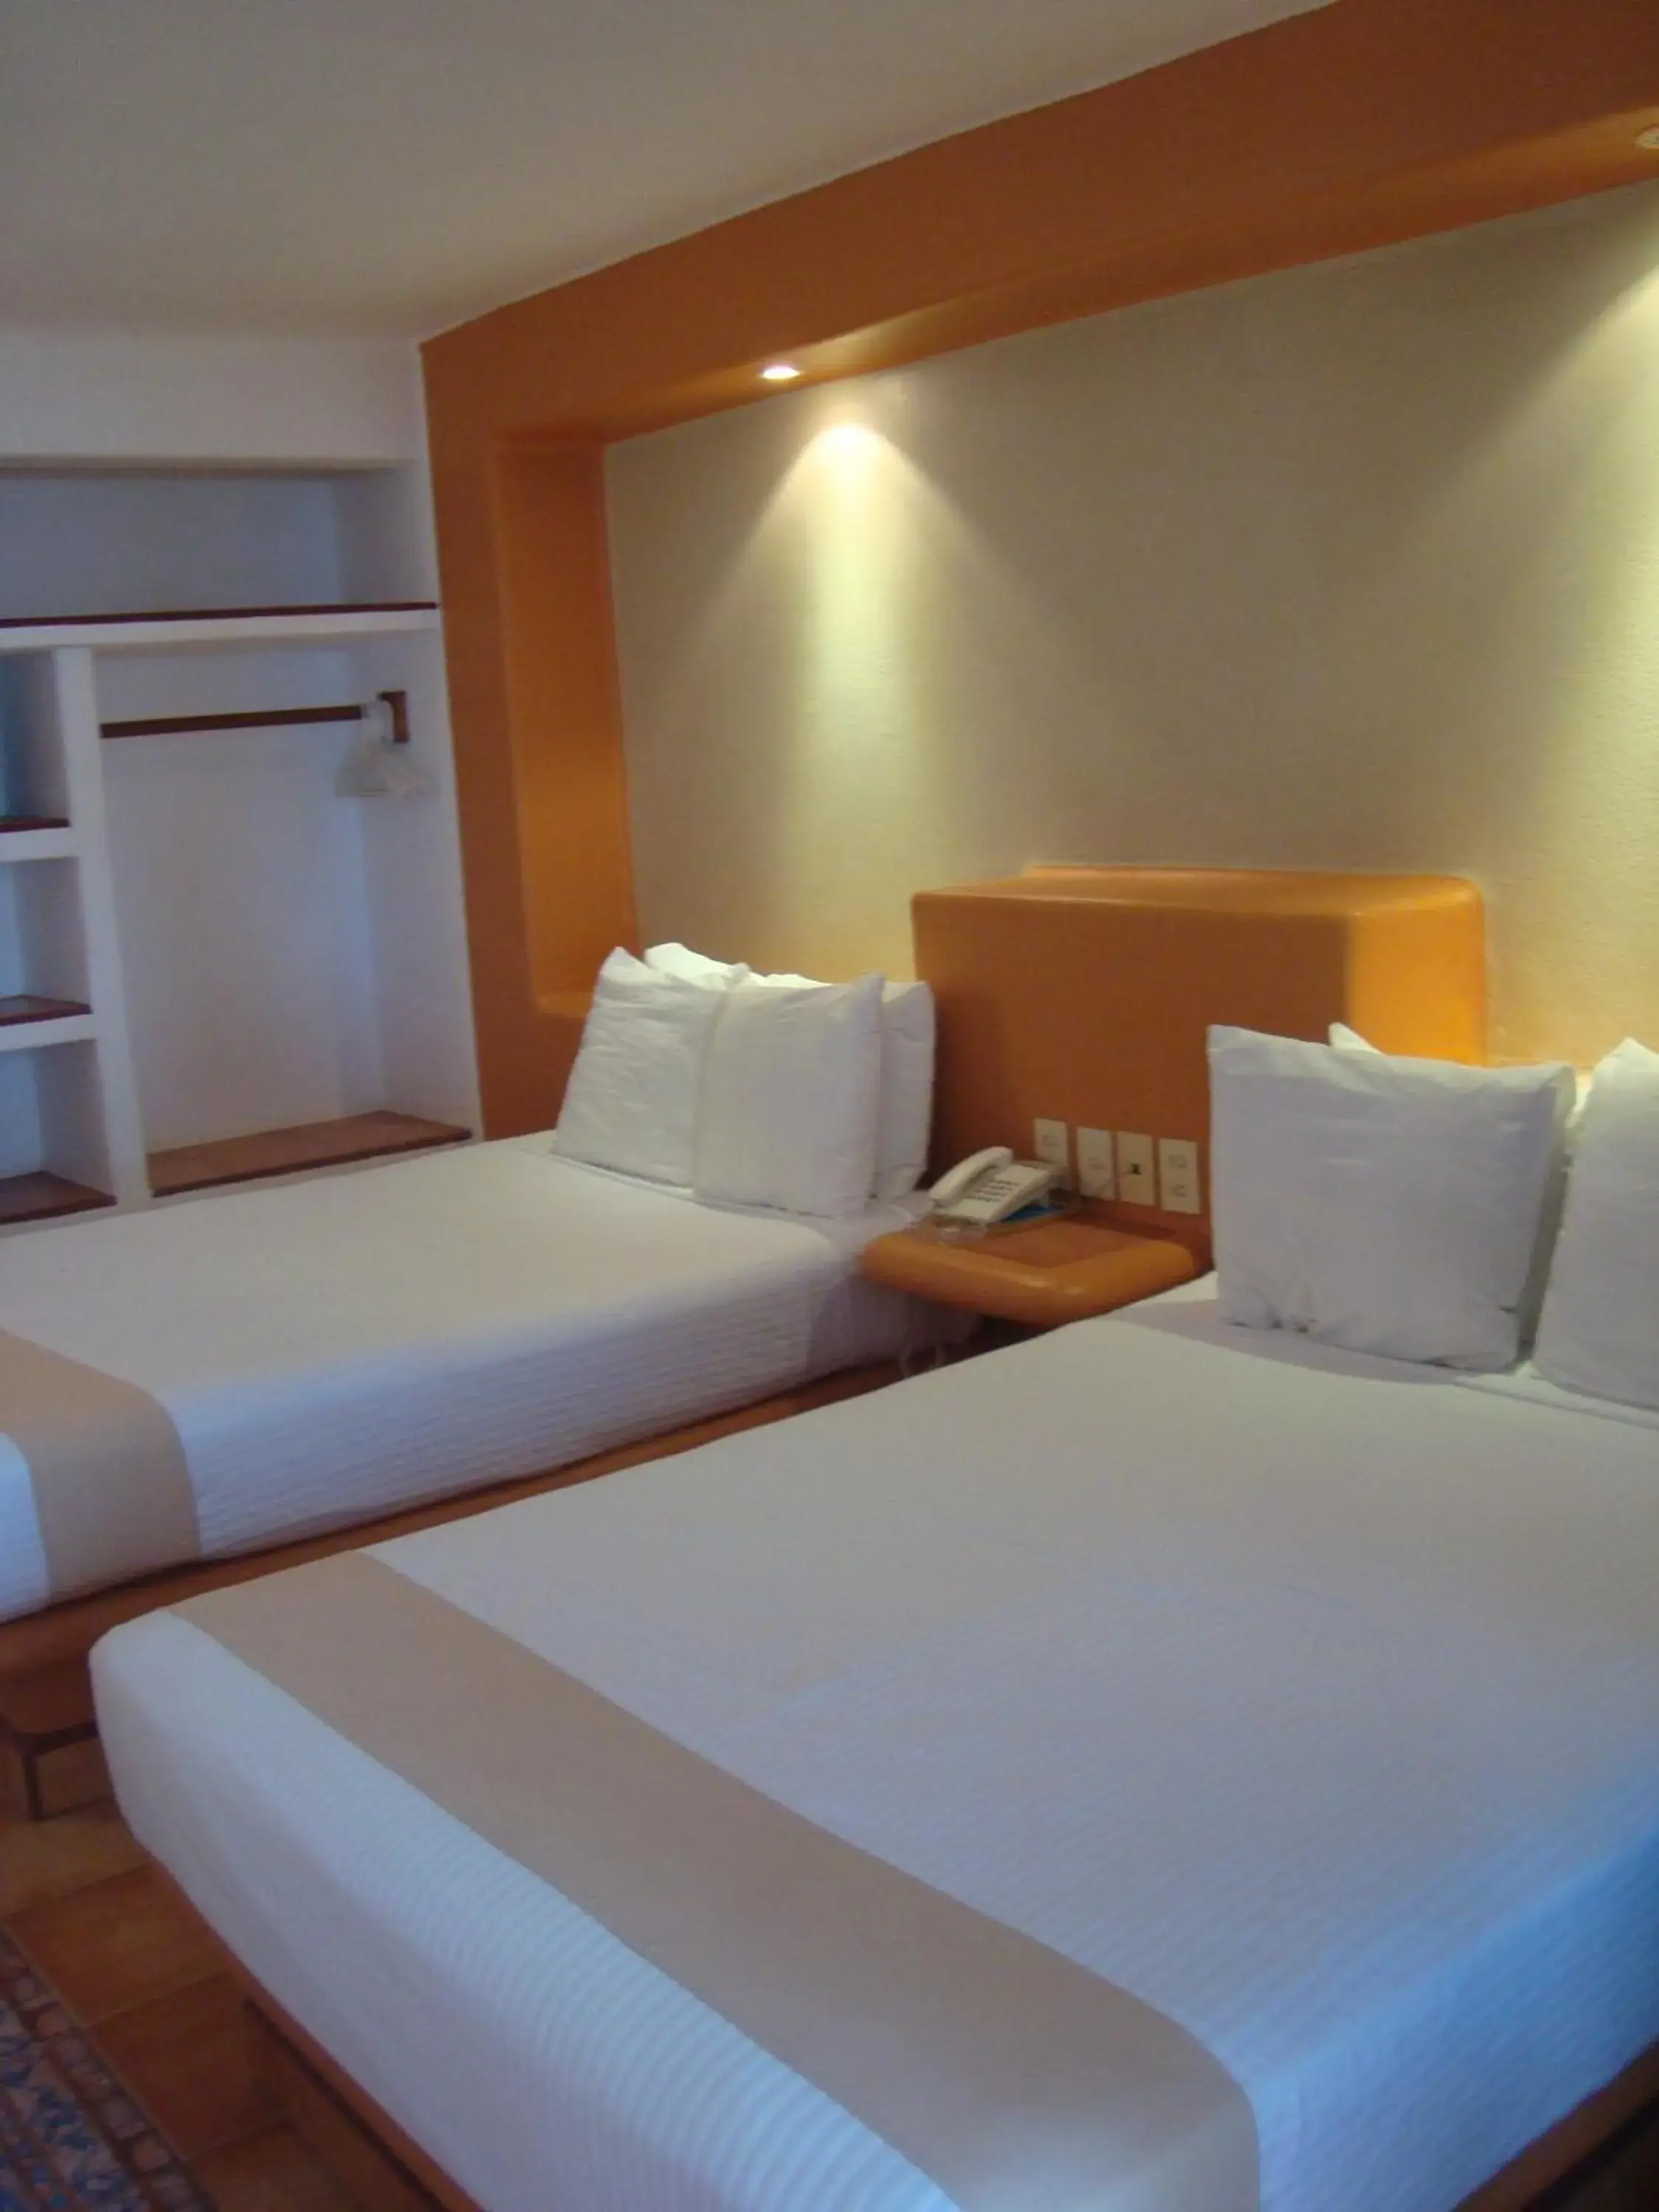 Bedroom, Room Photo in Hotel Villa Mexicana